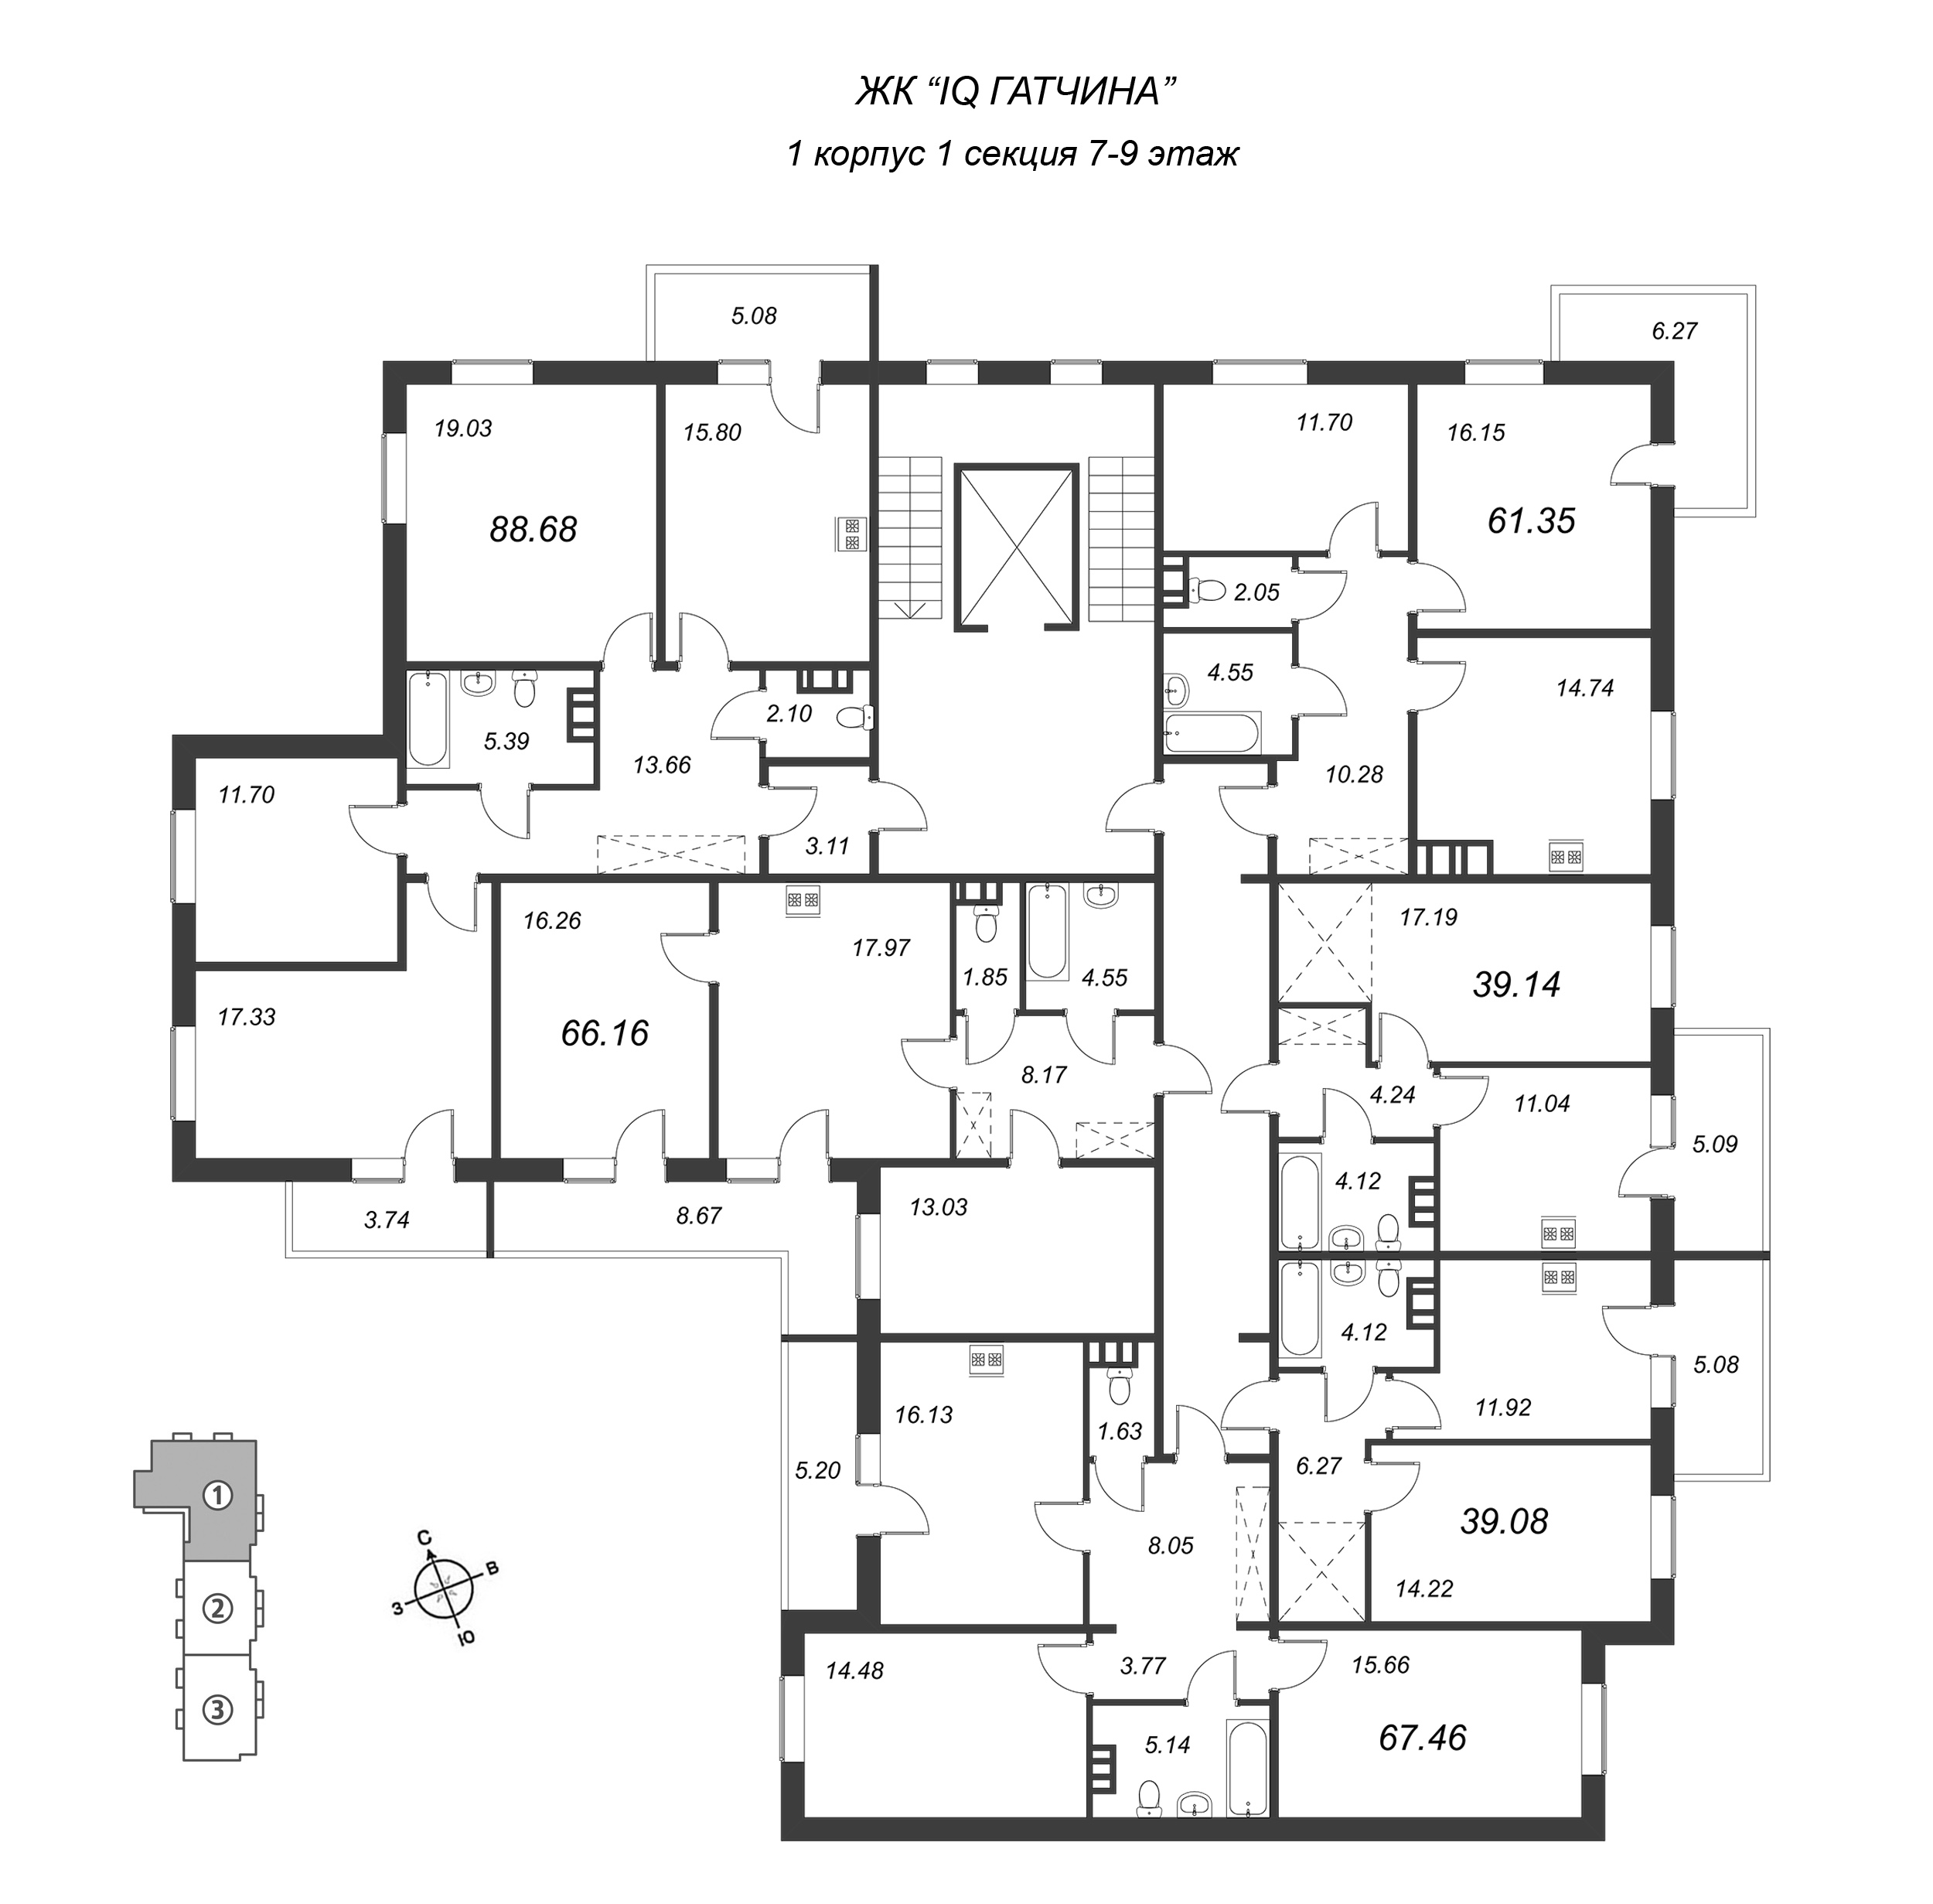 2-комнатная квартира, 67.46 м² в ЖК "IQ Гатчина" - планировка этажа